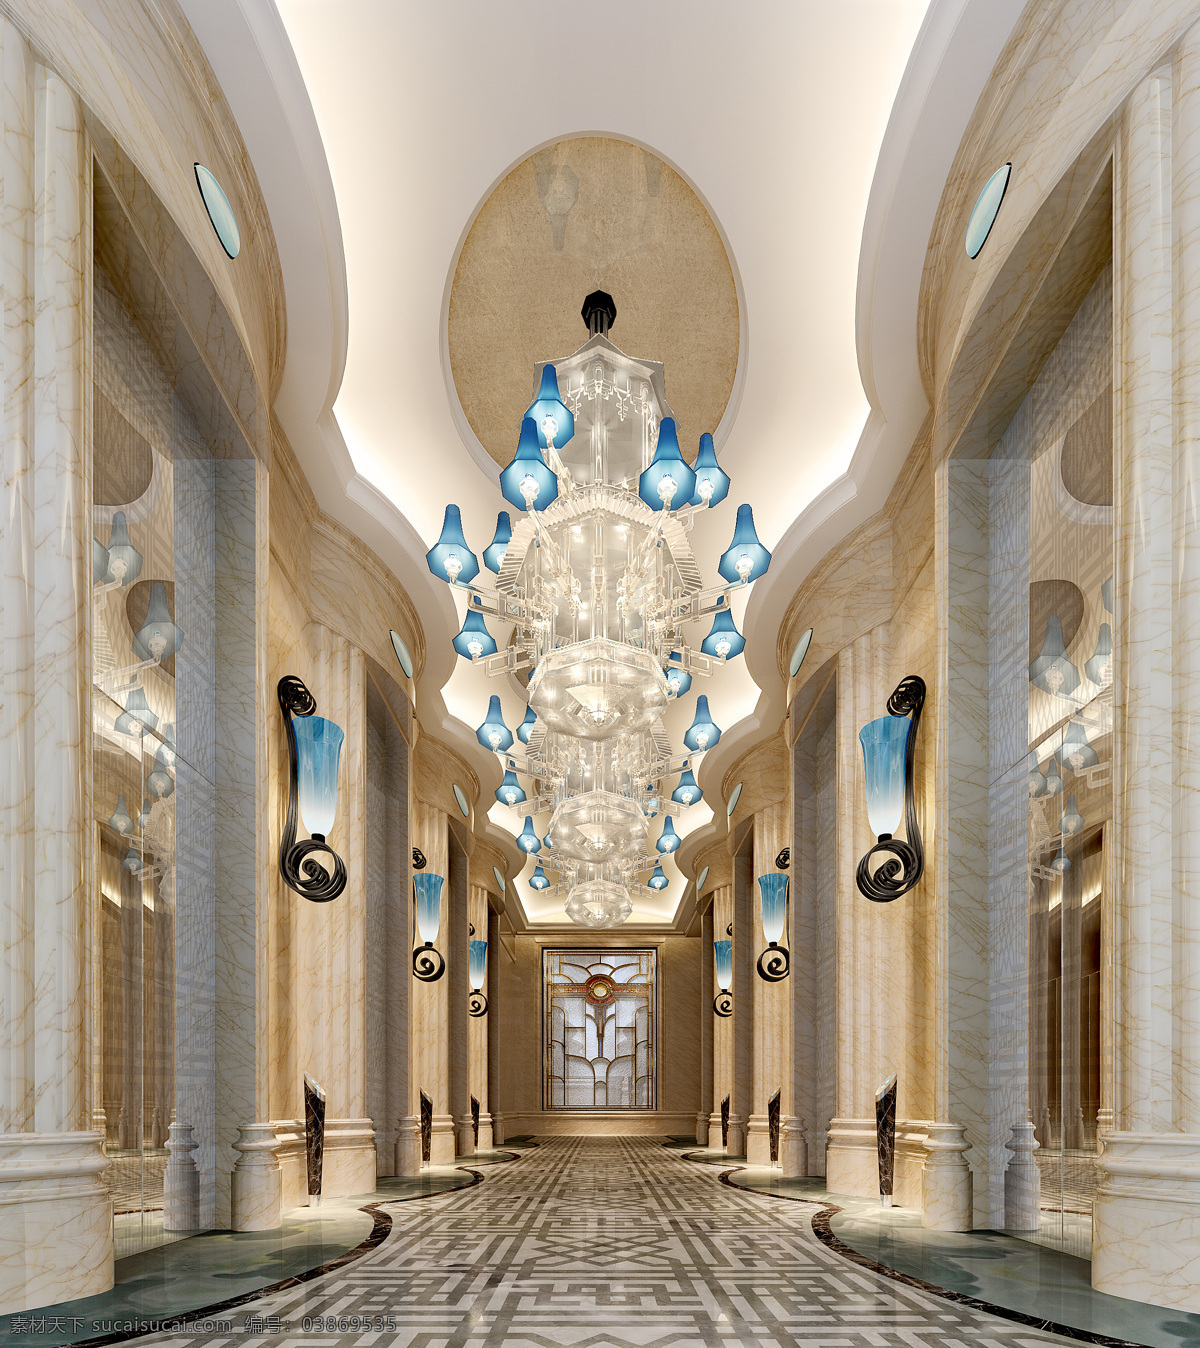 现代 时尚 精品 酒店 风格 水晶灯 工装 装修 效果图 酒店装修 大厅装修 走廊装修 瓷砖地板